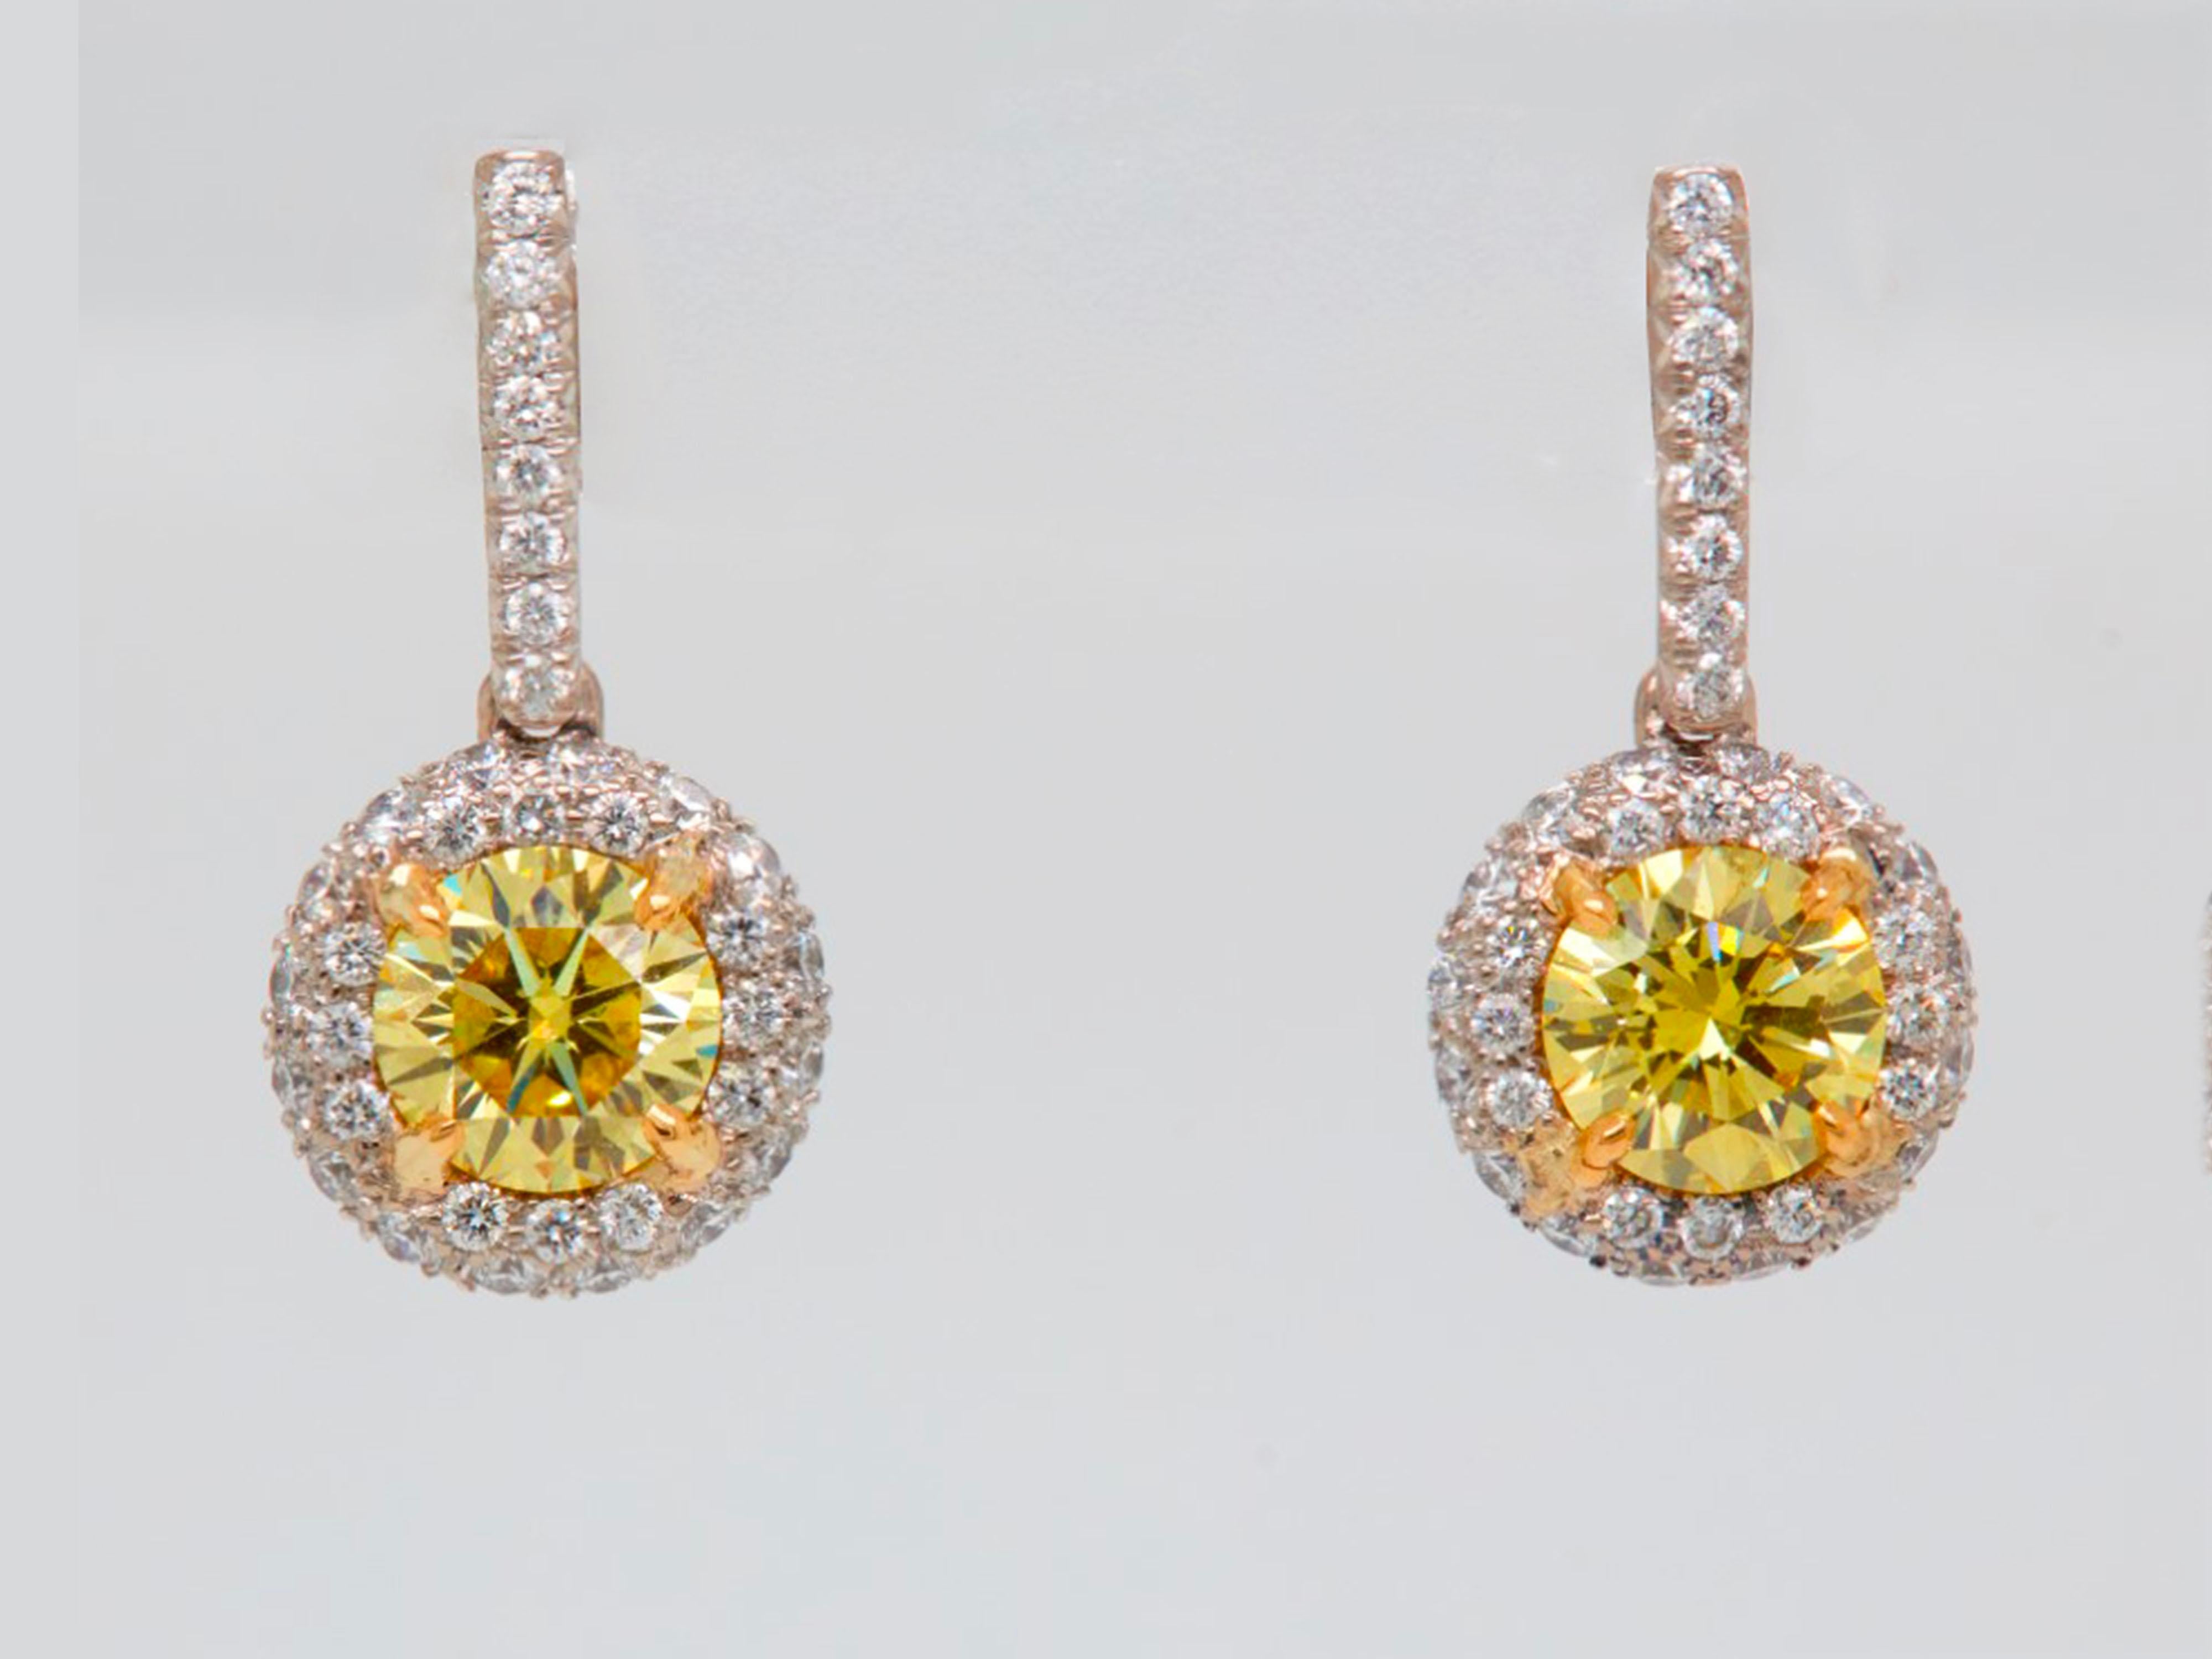 Collection Novel présentant une superbe paire de boucles d'oreilles avec un diamant rond de 2,09 carats avec halo, certifié par le GIA comme ayant une clarté VS+ et une couleur J.
Sertie d'une paire de diamants brillants ronds Fancy Vivid Yellow de